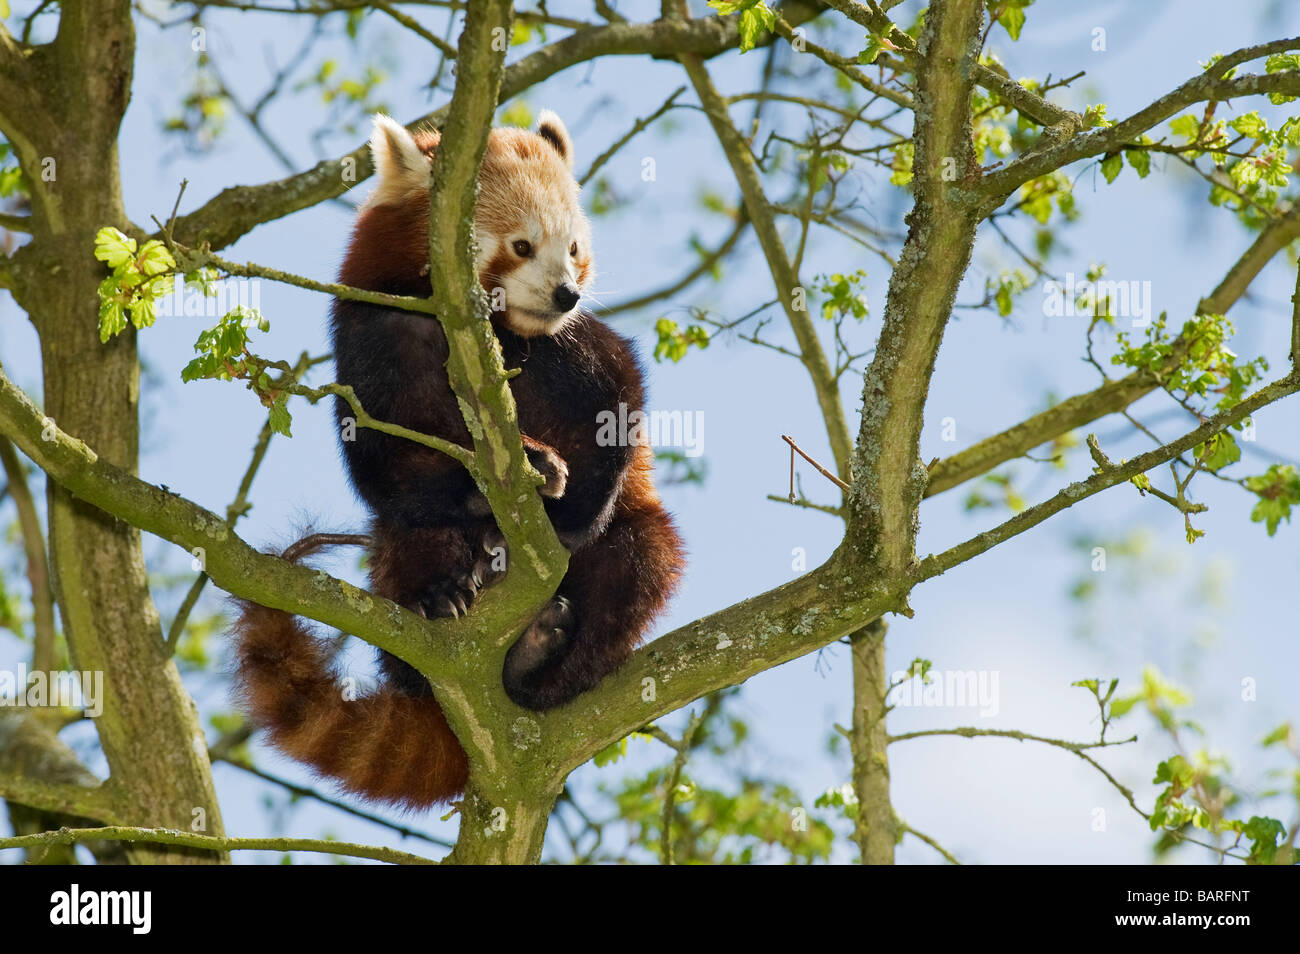 Panda rouge ou moins (Ailurus fulgens) Himalaya Chine Asie du Sud captive, Parc animalier de Port Lympne, Royaume-Uni Banque D'Images